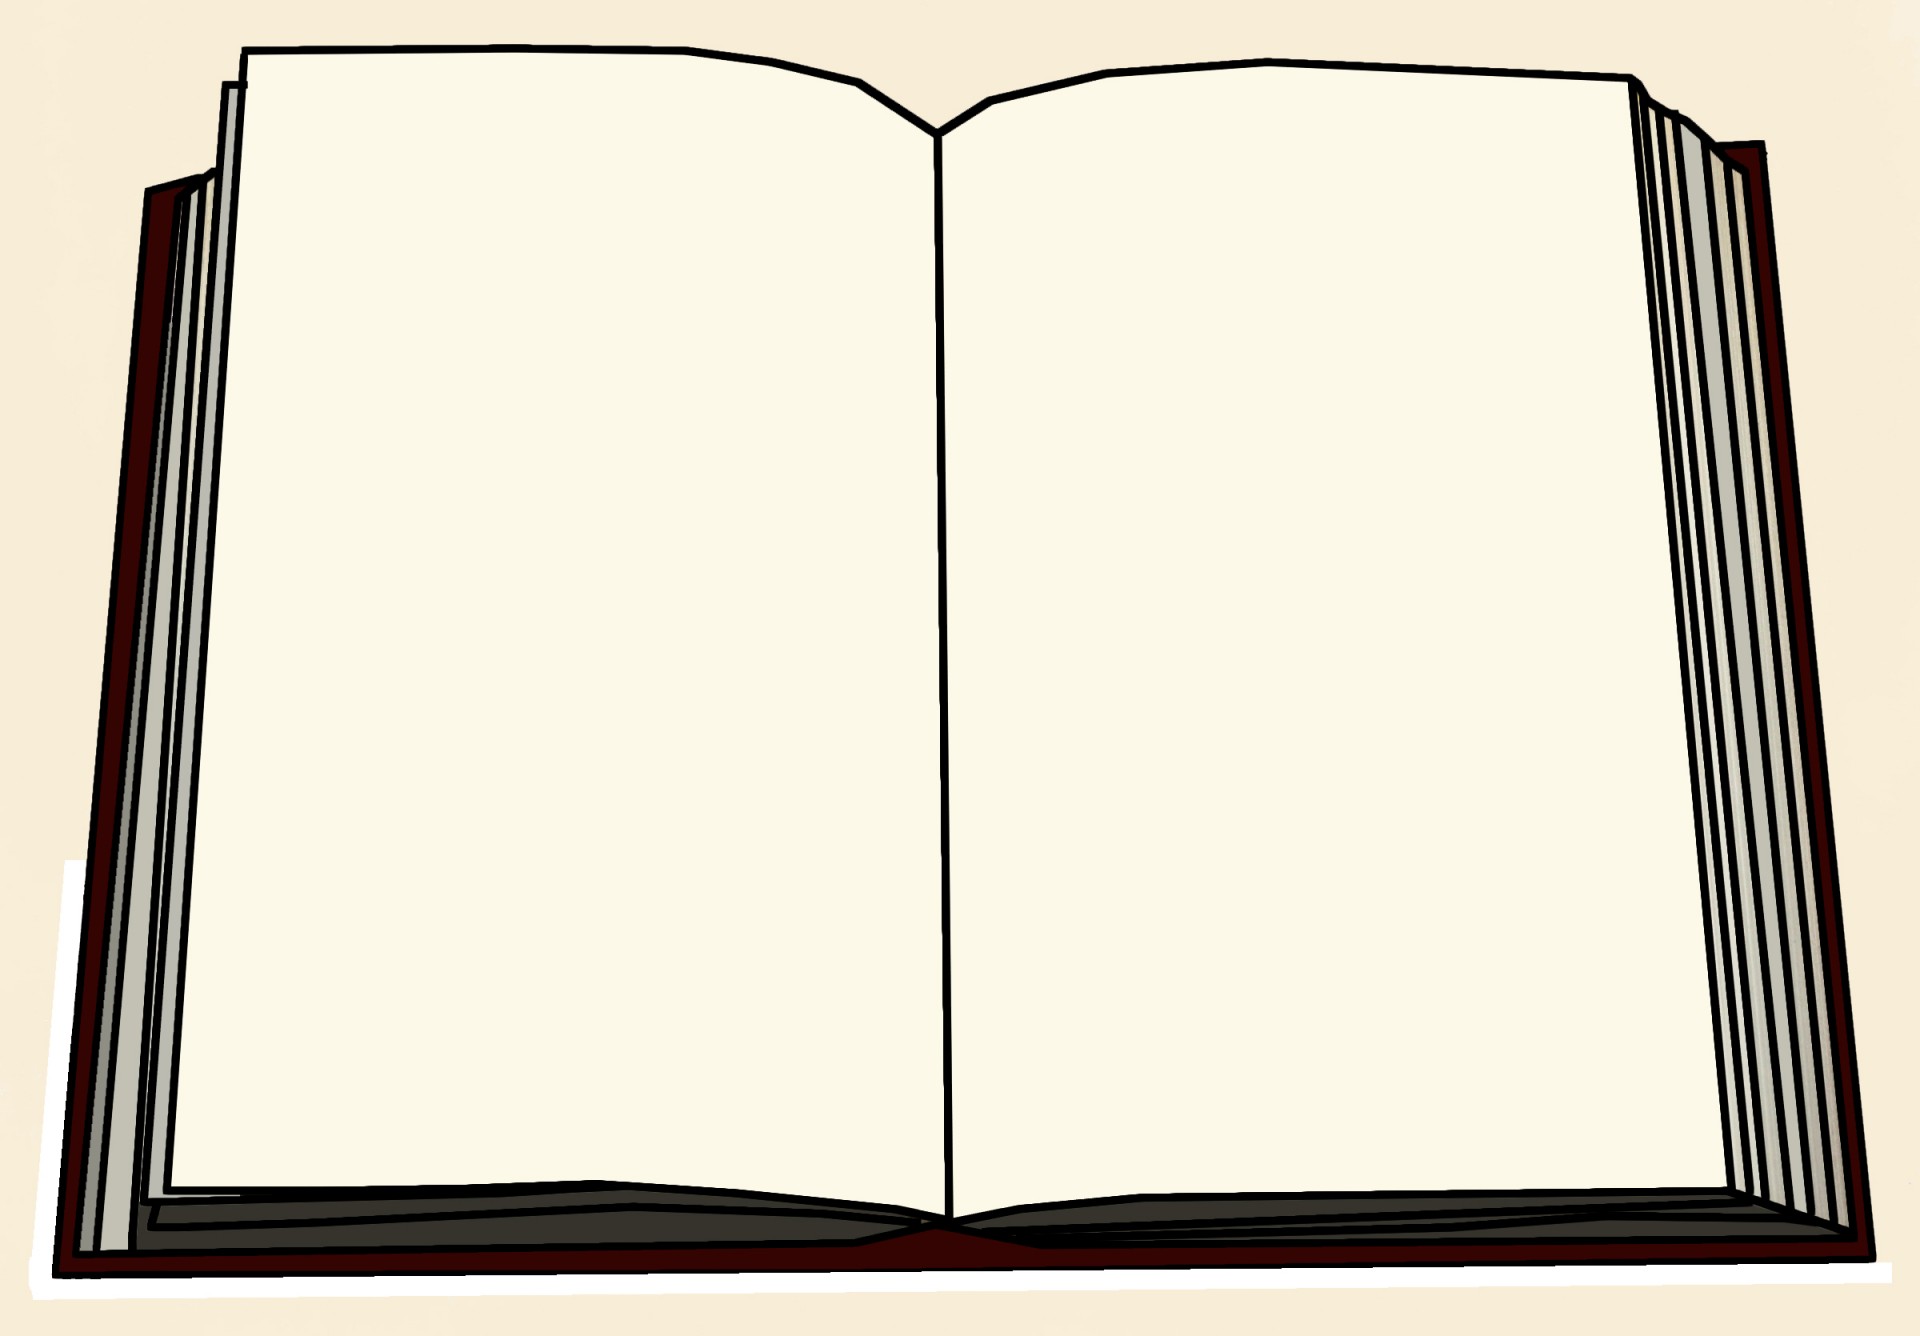 Книга page. Раскрытая книжка. Открытая книжка пустая. Изображение раскрытой книги. Рисунок развернутой книги.